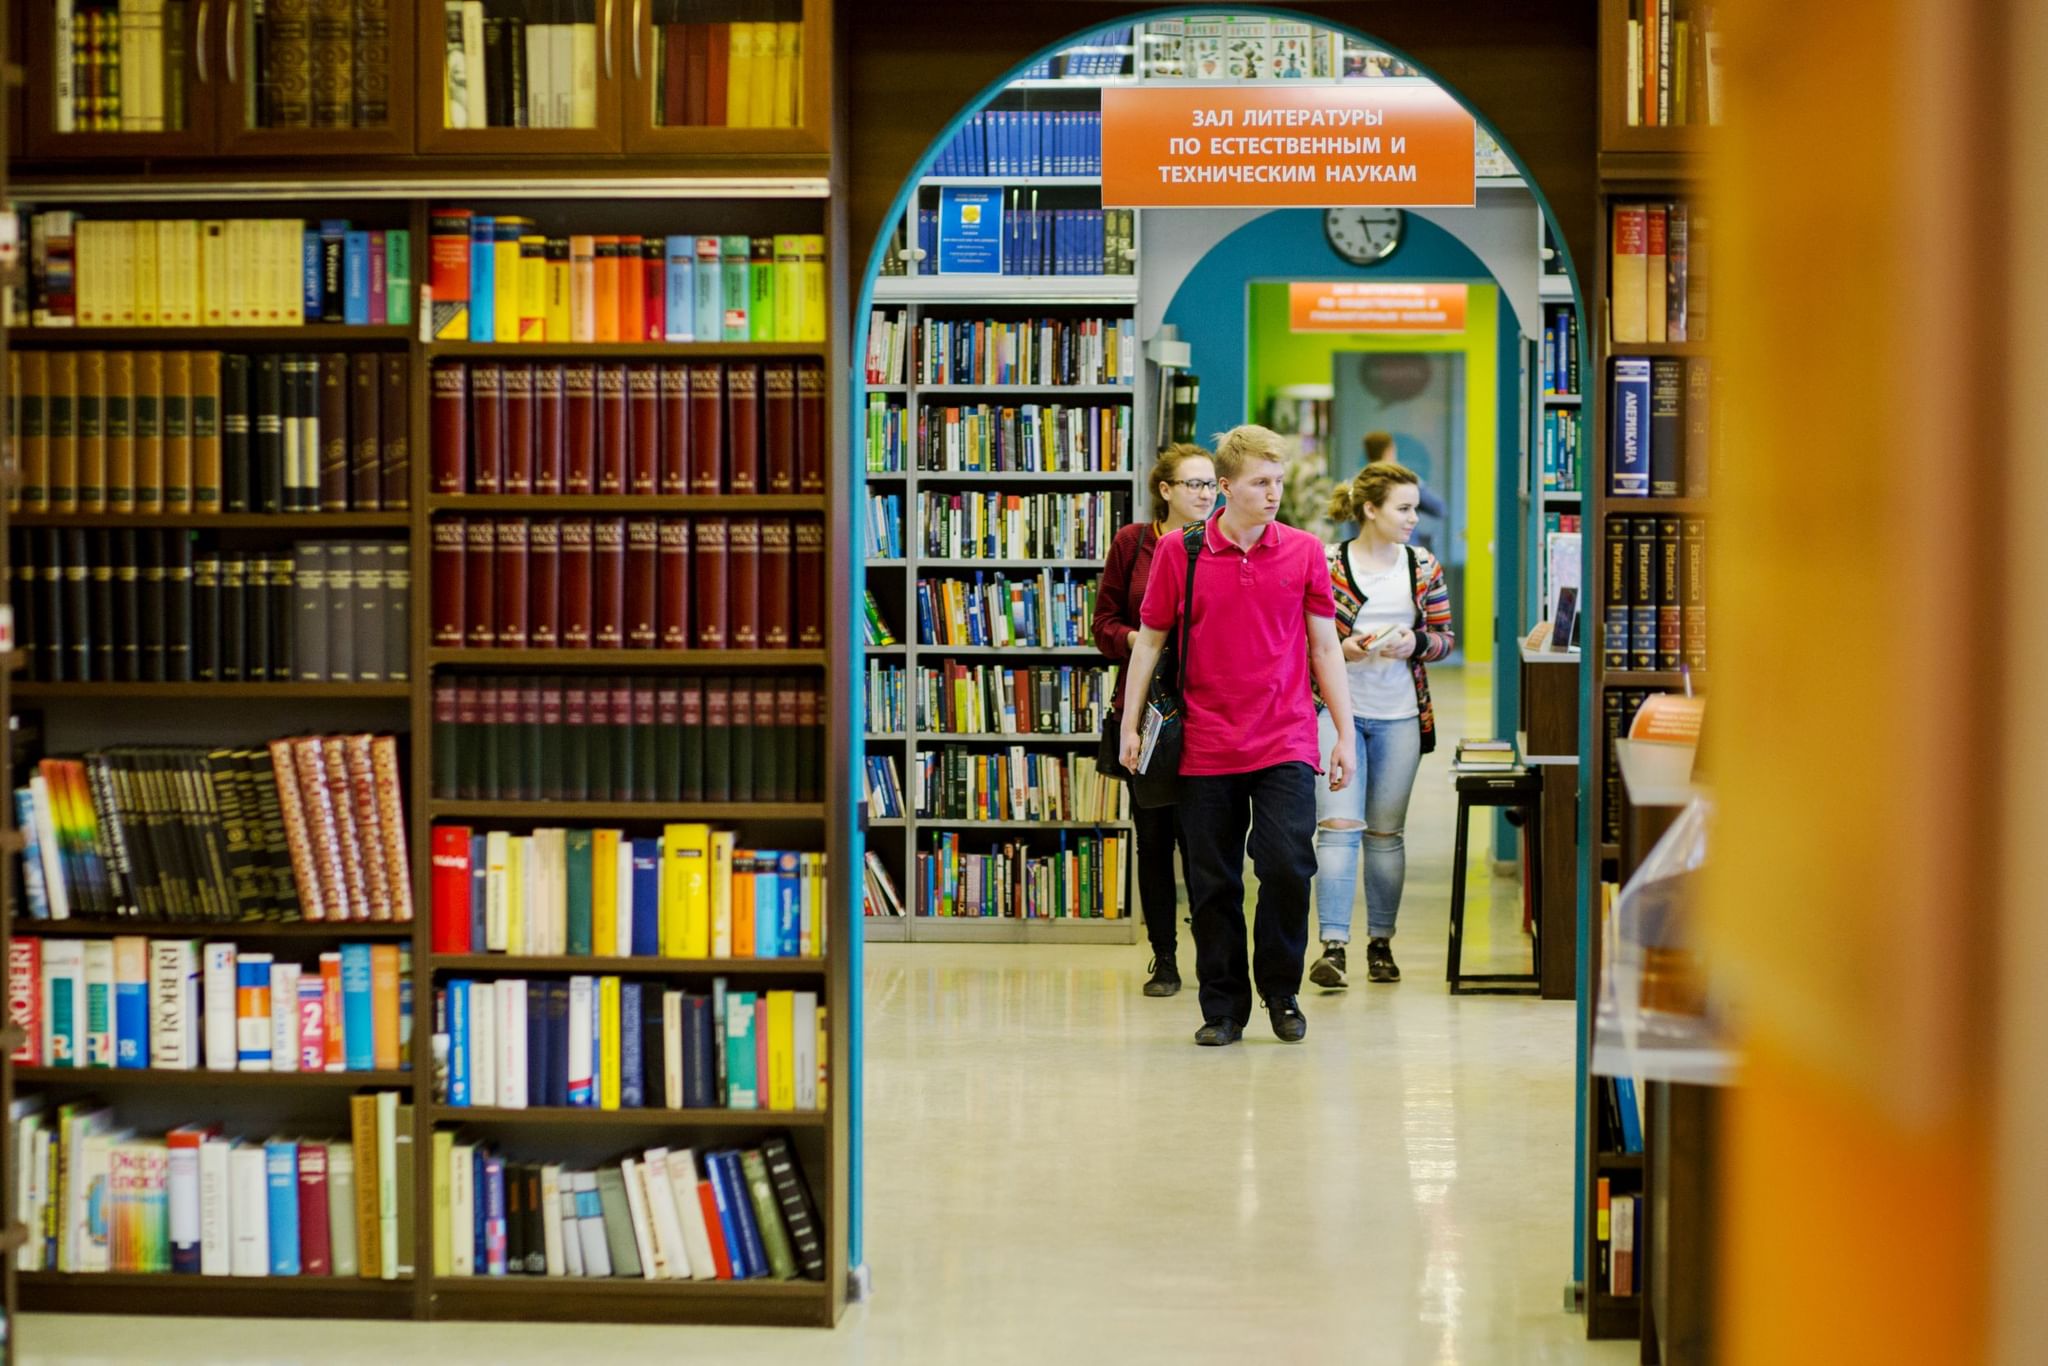 Программа интерактивная библиотека. РГБМ библиотека для молодёжи. Евразийская библиотека в Уфе. Читатели в библиотеке. Современная библиотека.